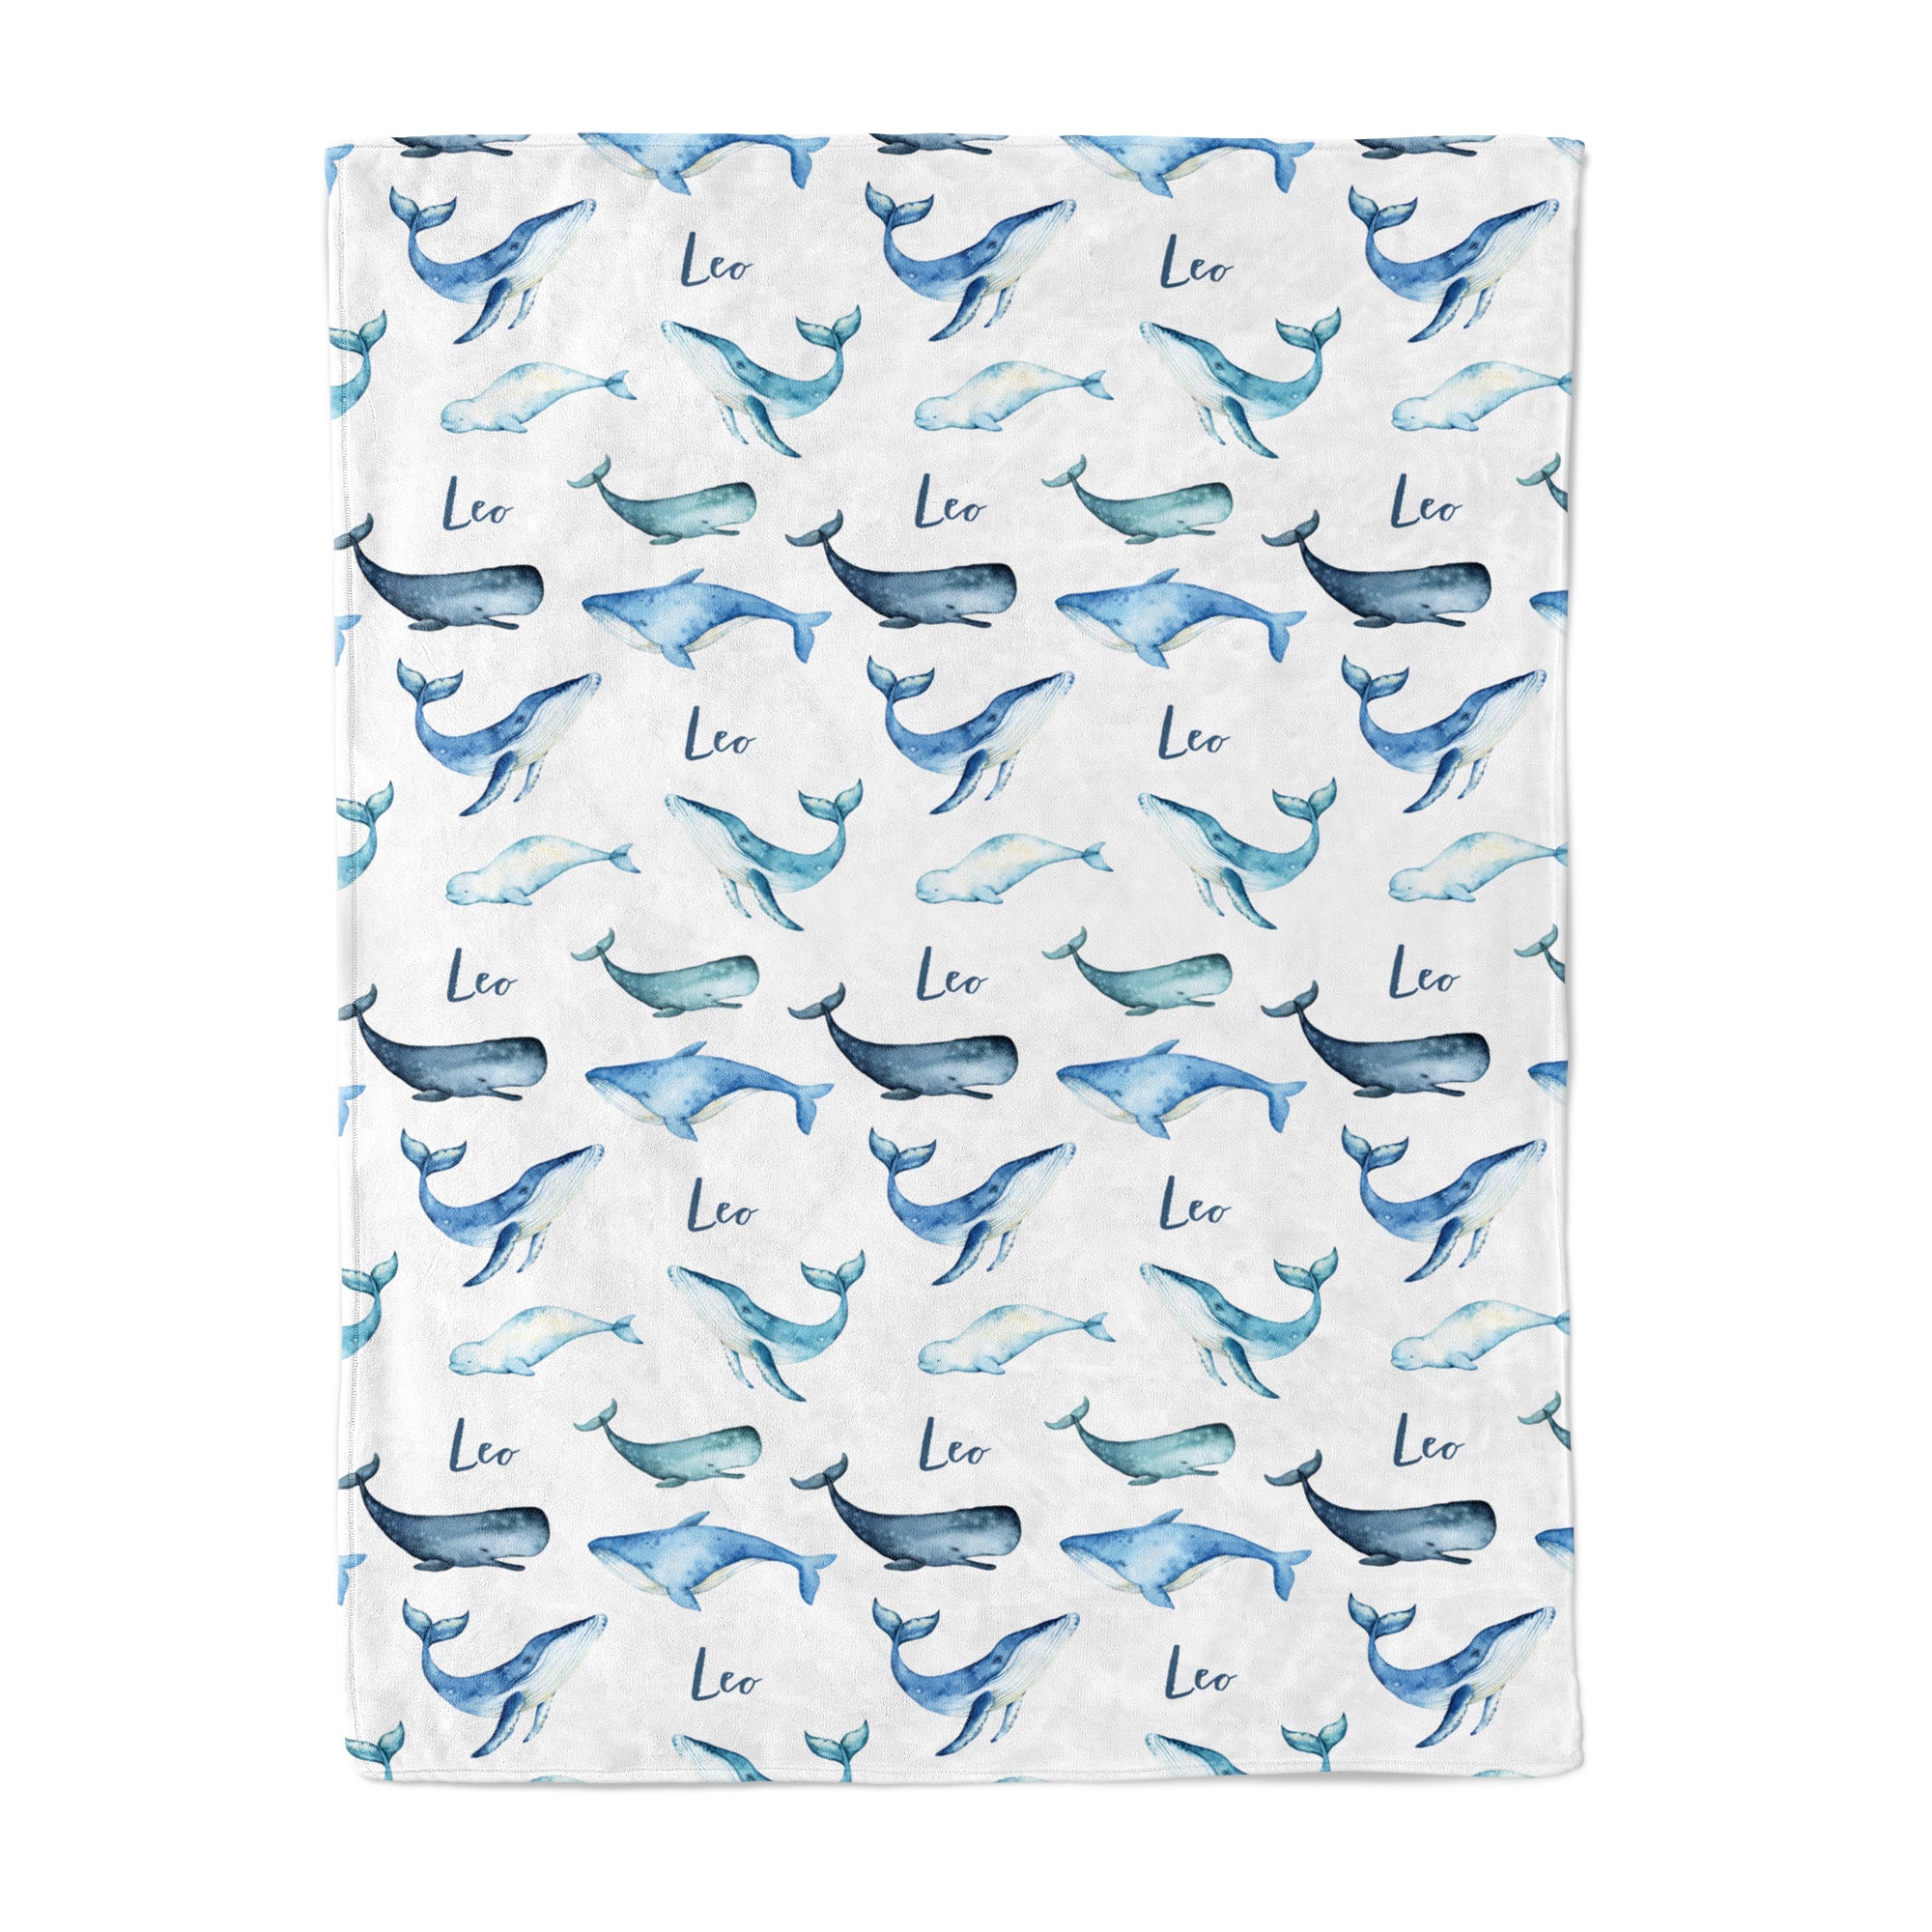 Whales - Personalised Keepsake Blanket